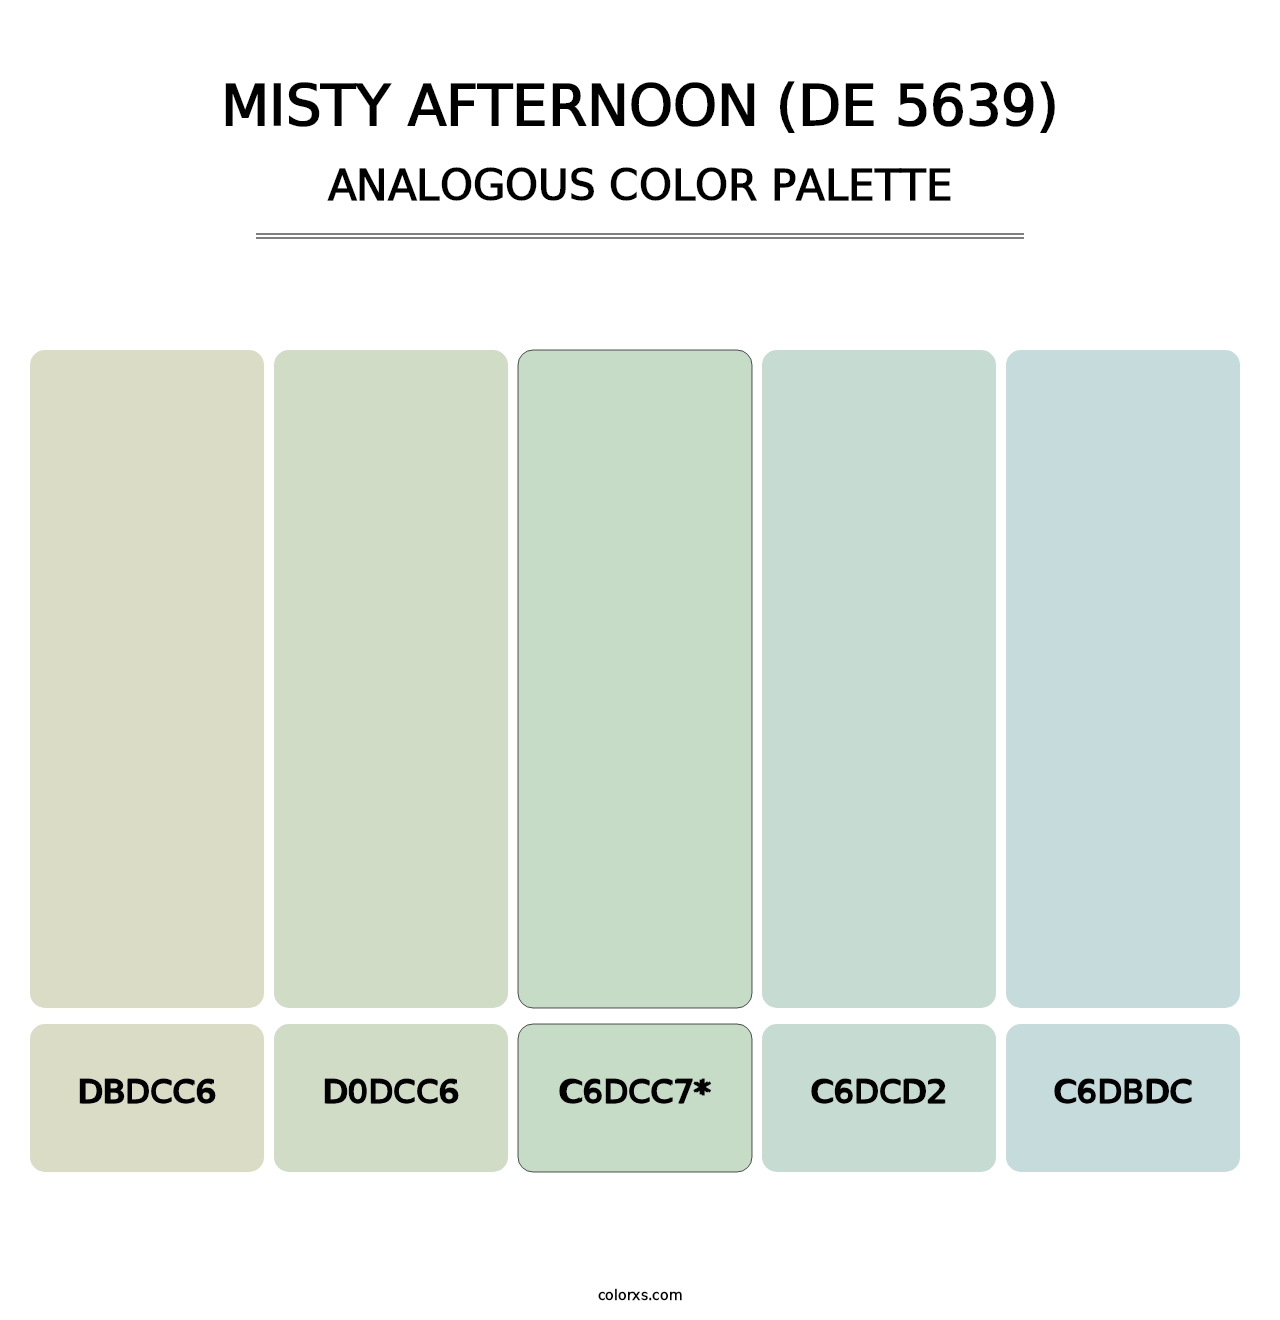 Misty Afternoon (DE 5639) - Analogous Color Palette